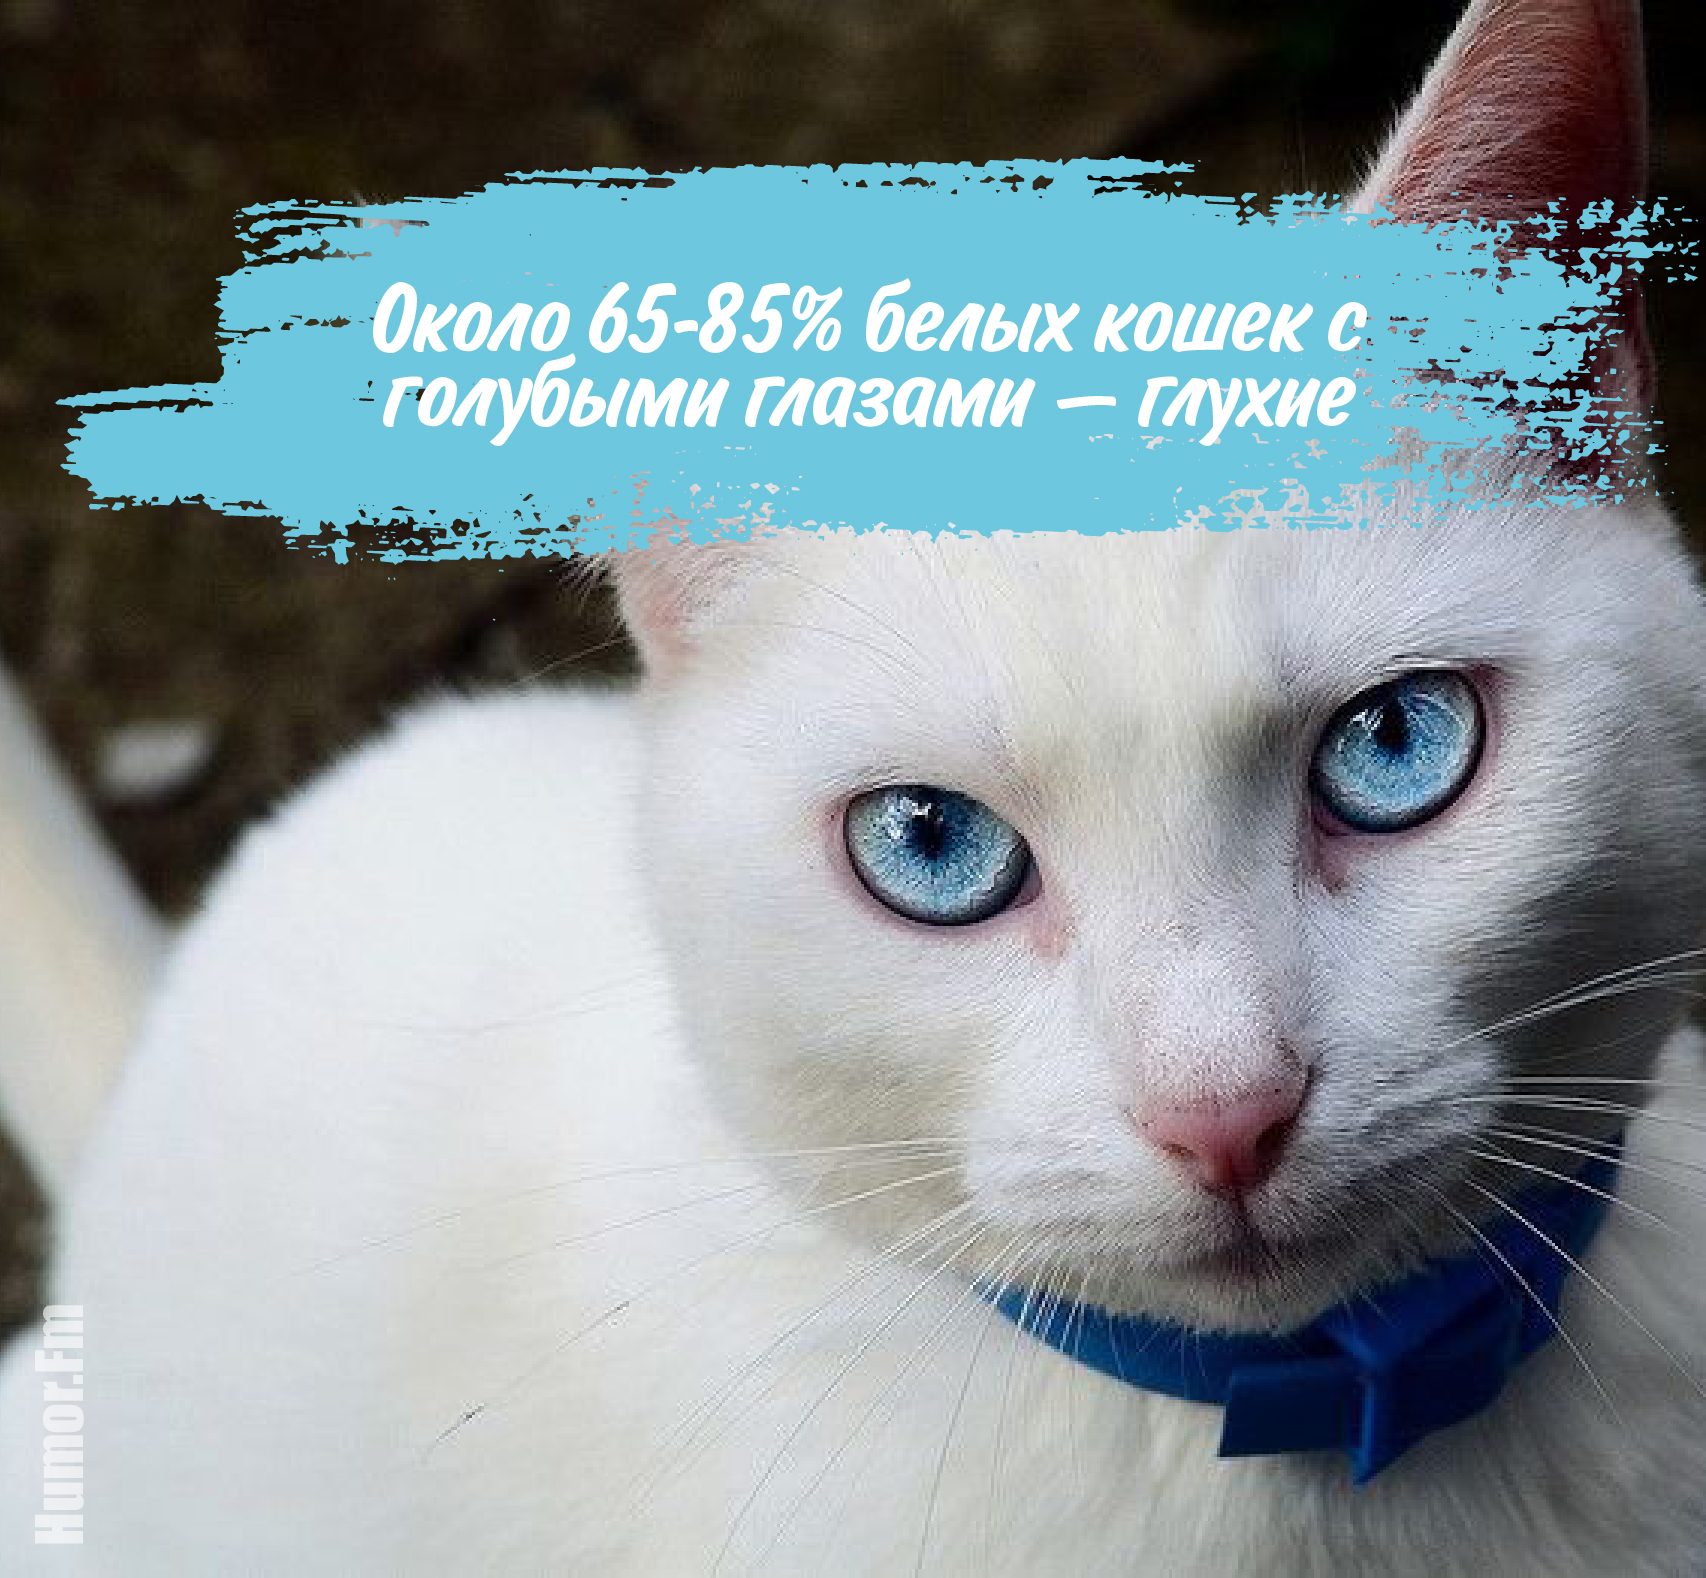 Про голубоглазую. Интересные факты о глазах. Белые голубоглазые кошки глухие. Факты о людях с голубыми глазами. Факты о голубых глазах.